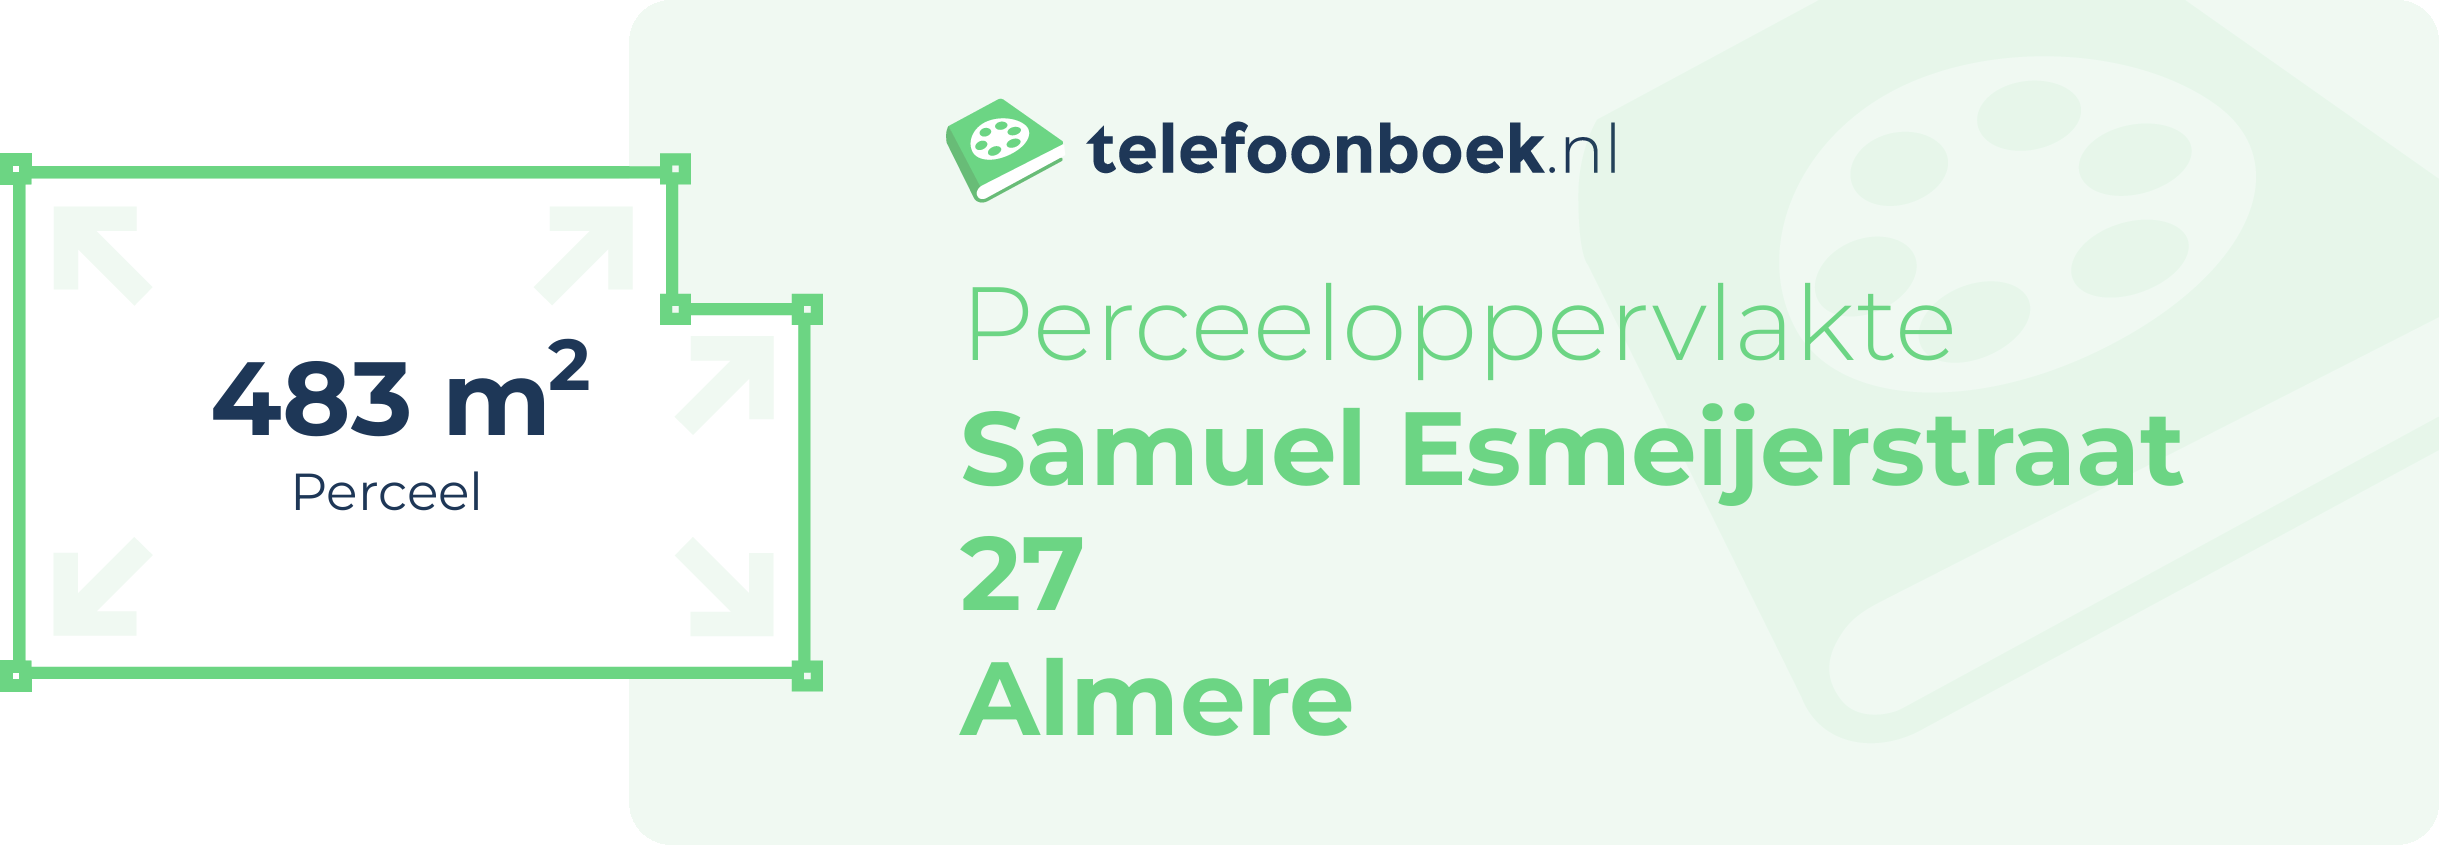 Perceeloppervlakte Samuel Esmeijerstraat 27 Almere